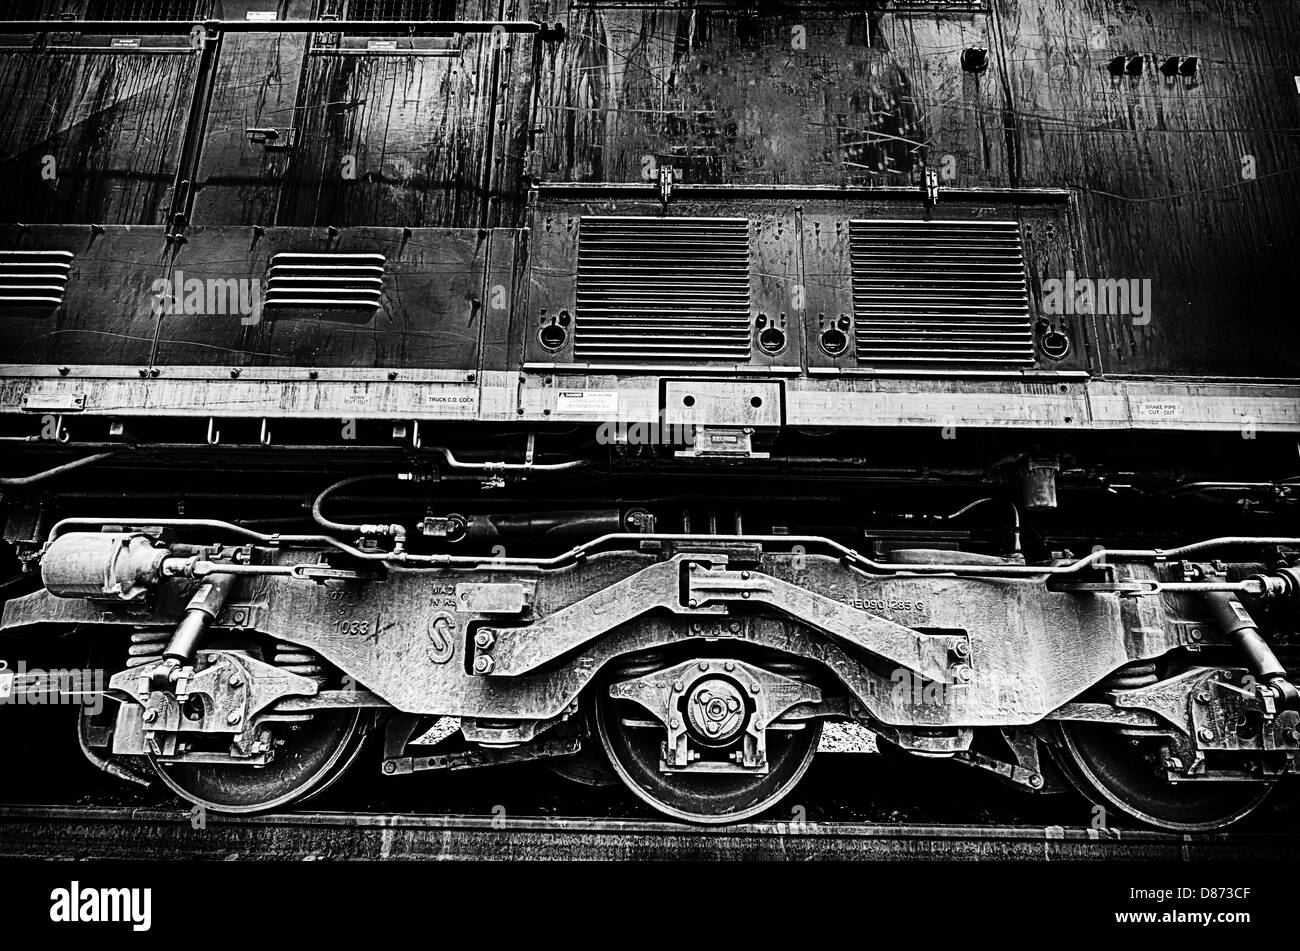 Il s'agit d'une image gros plan noir et blanc de roues moteur des locomotives. Banque D'Images